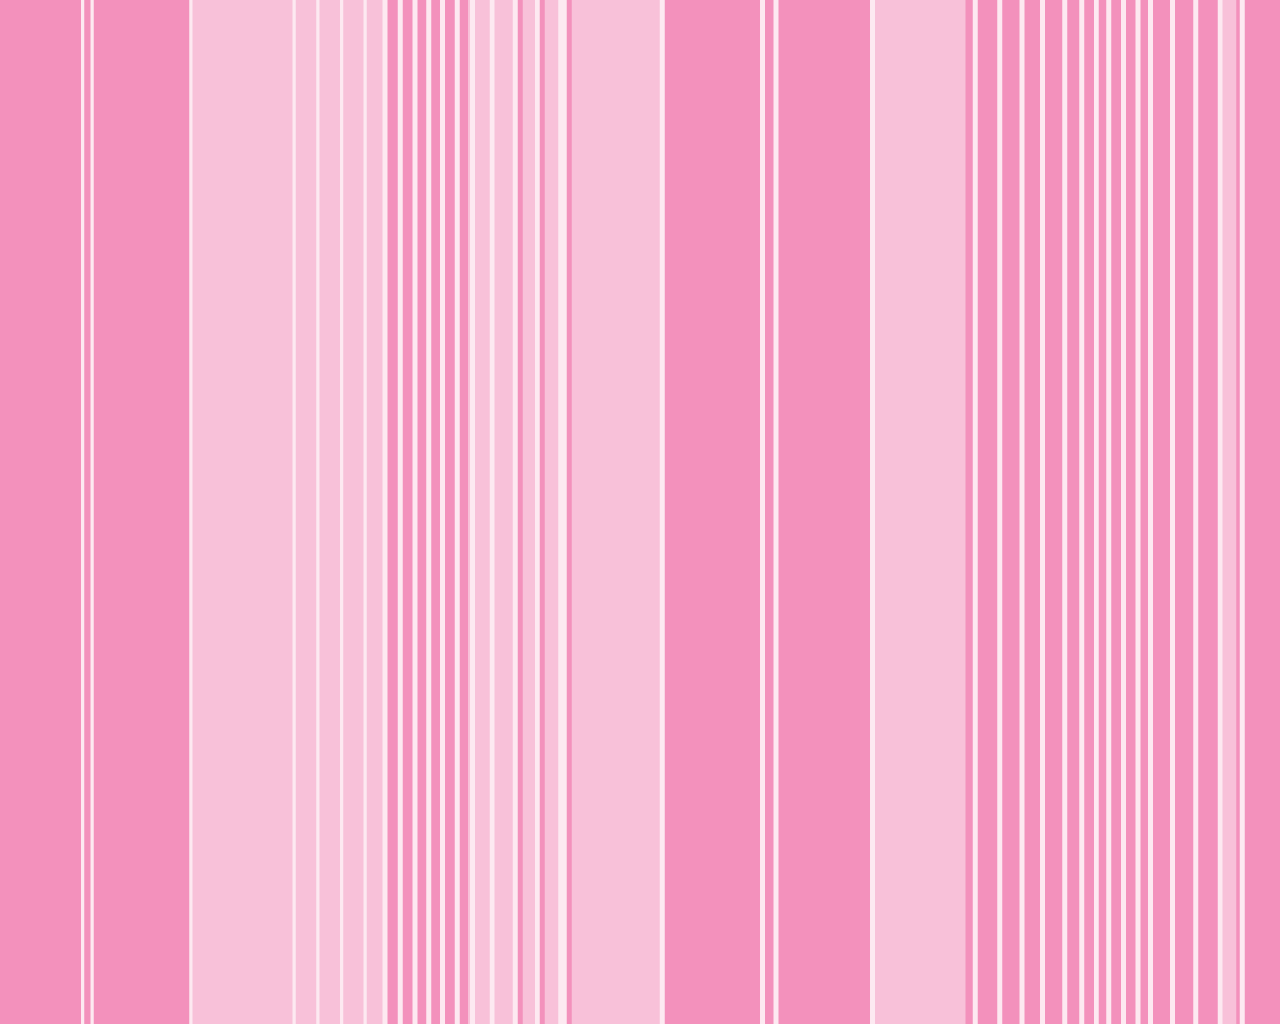 I Love Pink! - Utari K. Hartoko